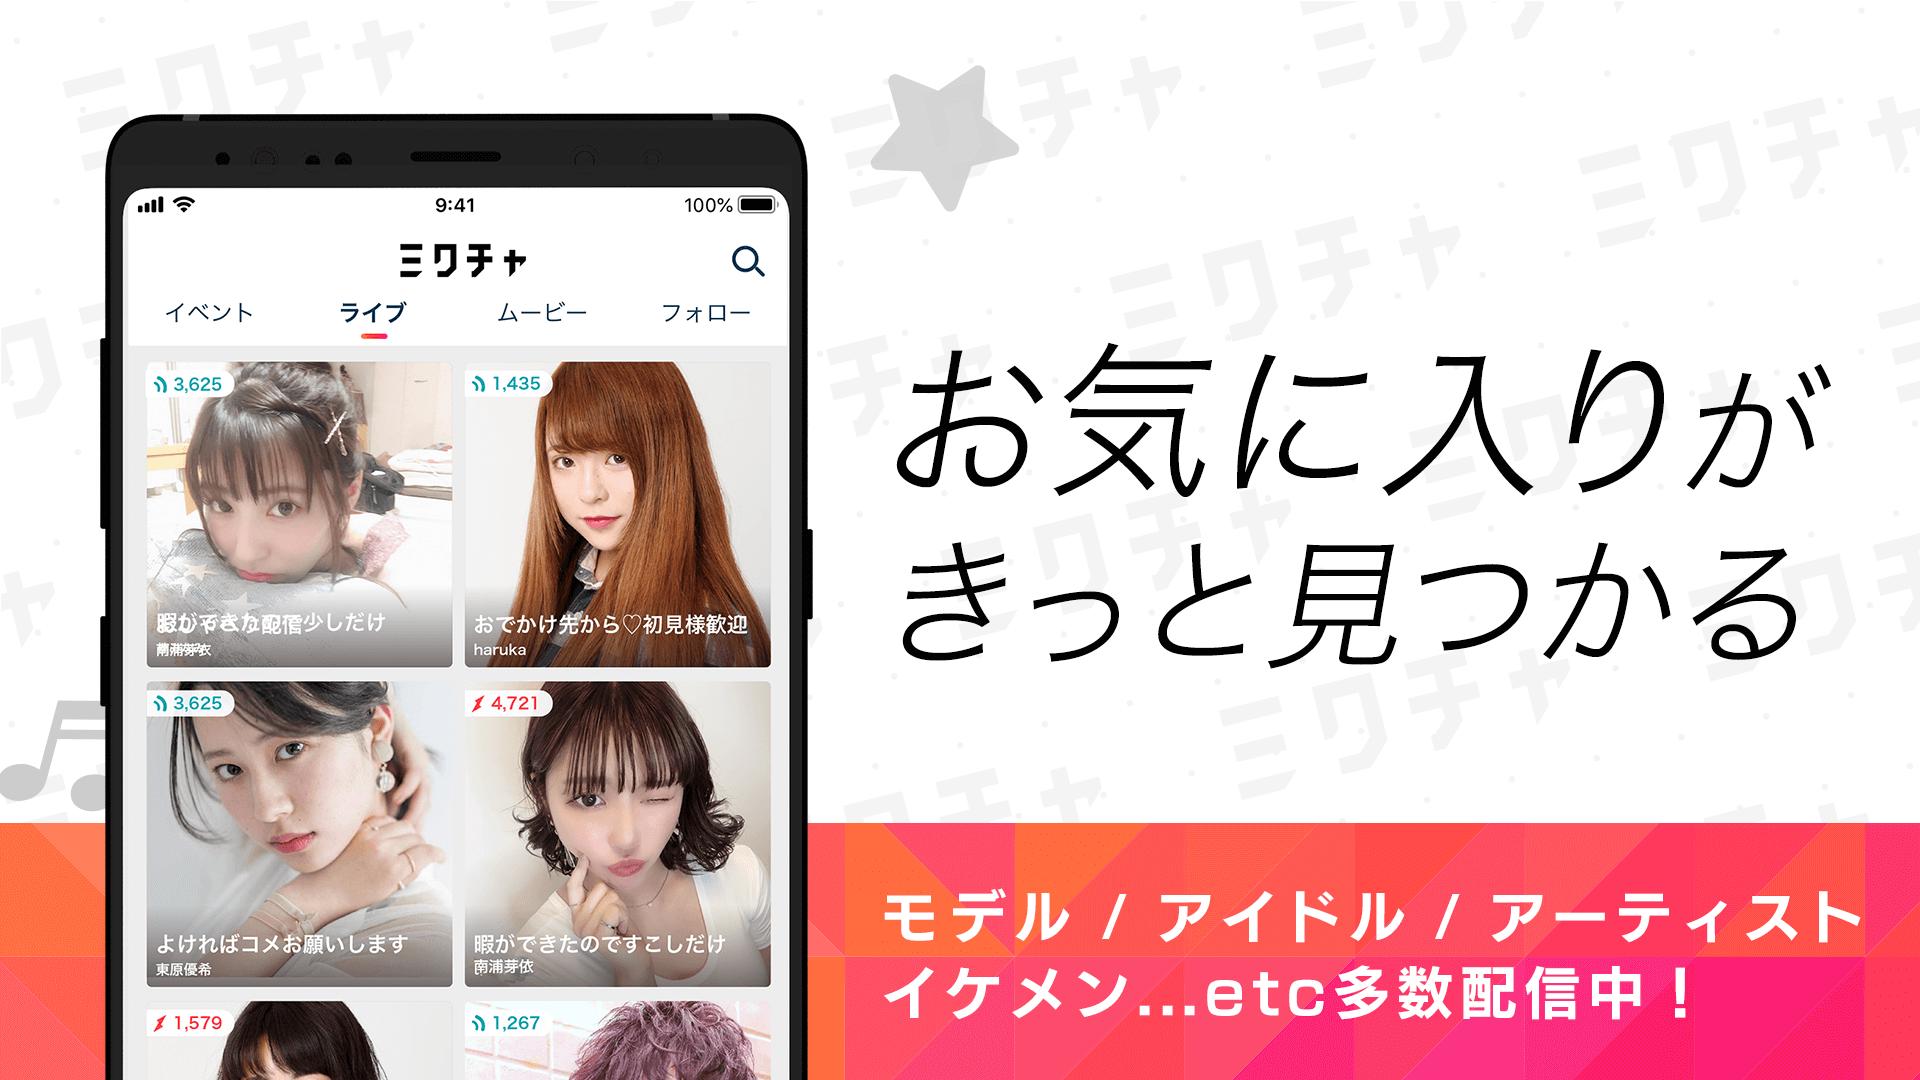 Android 用の ミクチャ Mixchannel ライブ配信 動画アプリ Apk をダウンロード